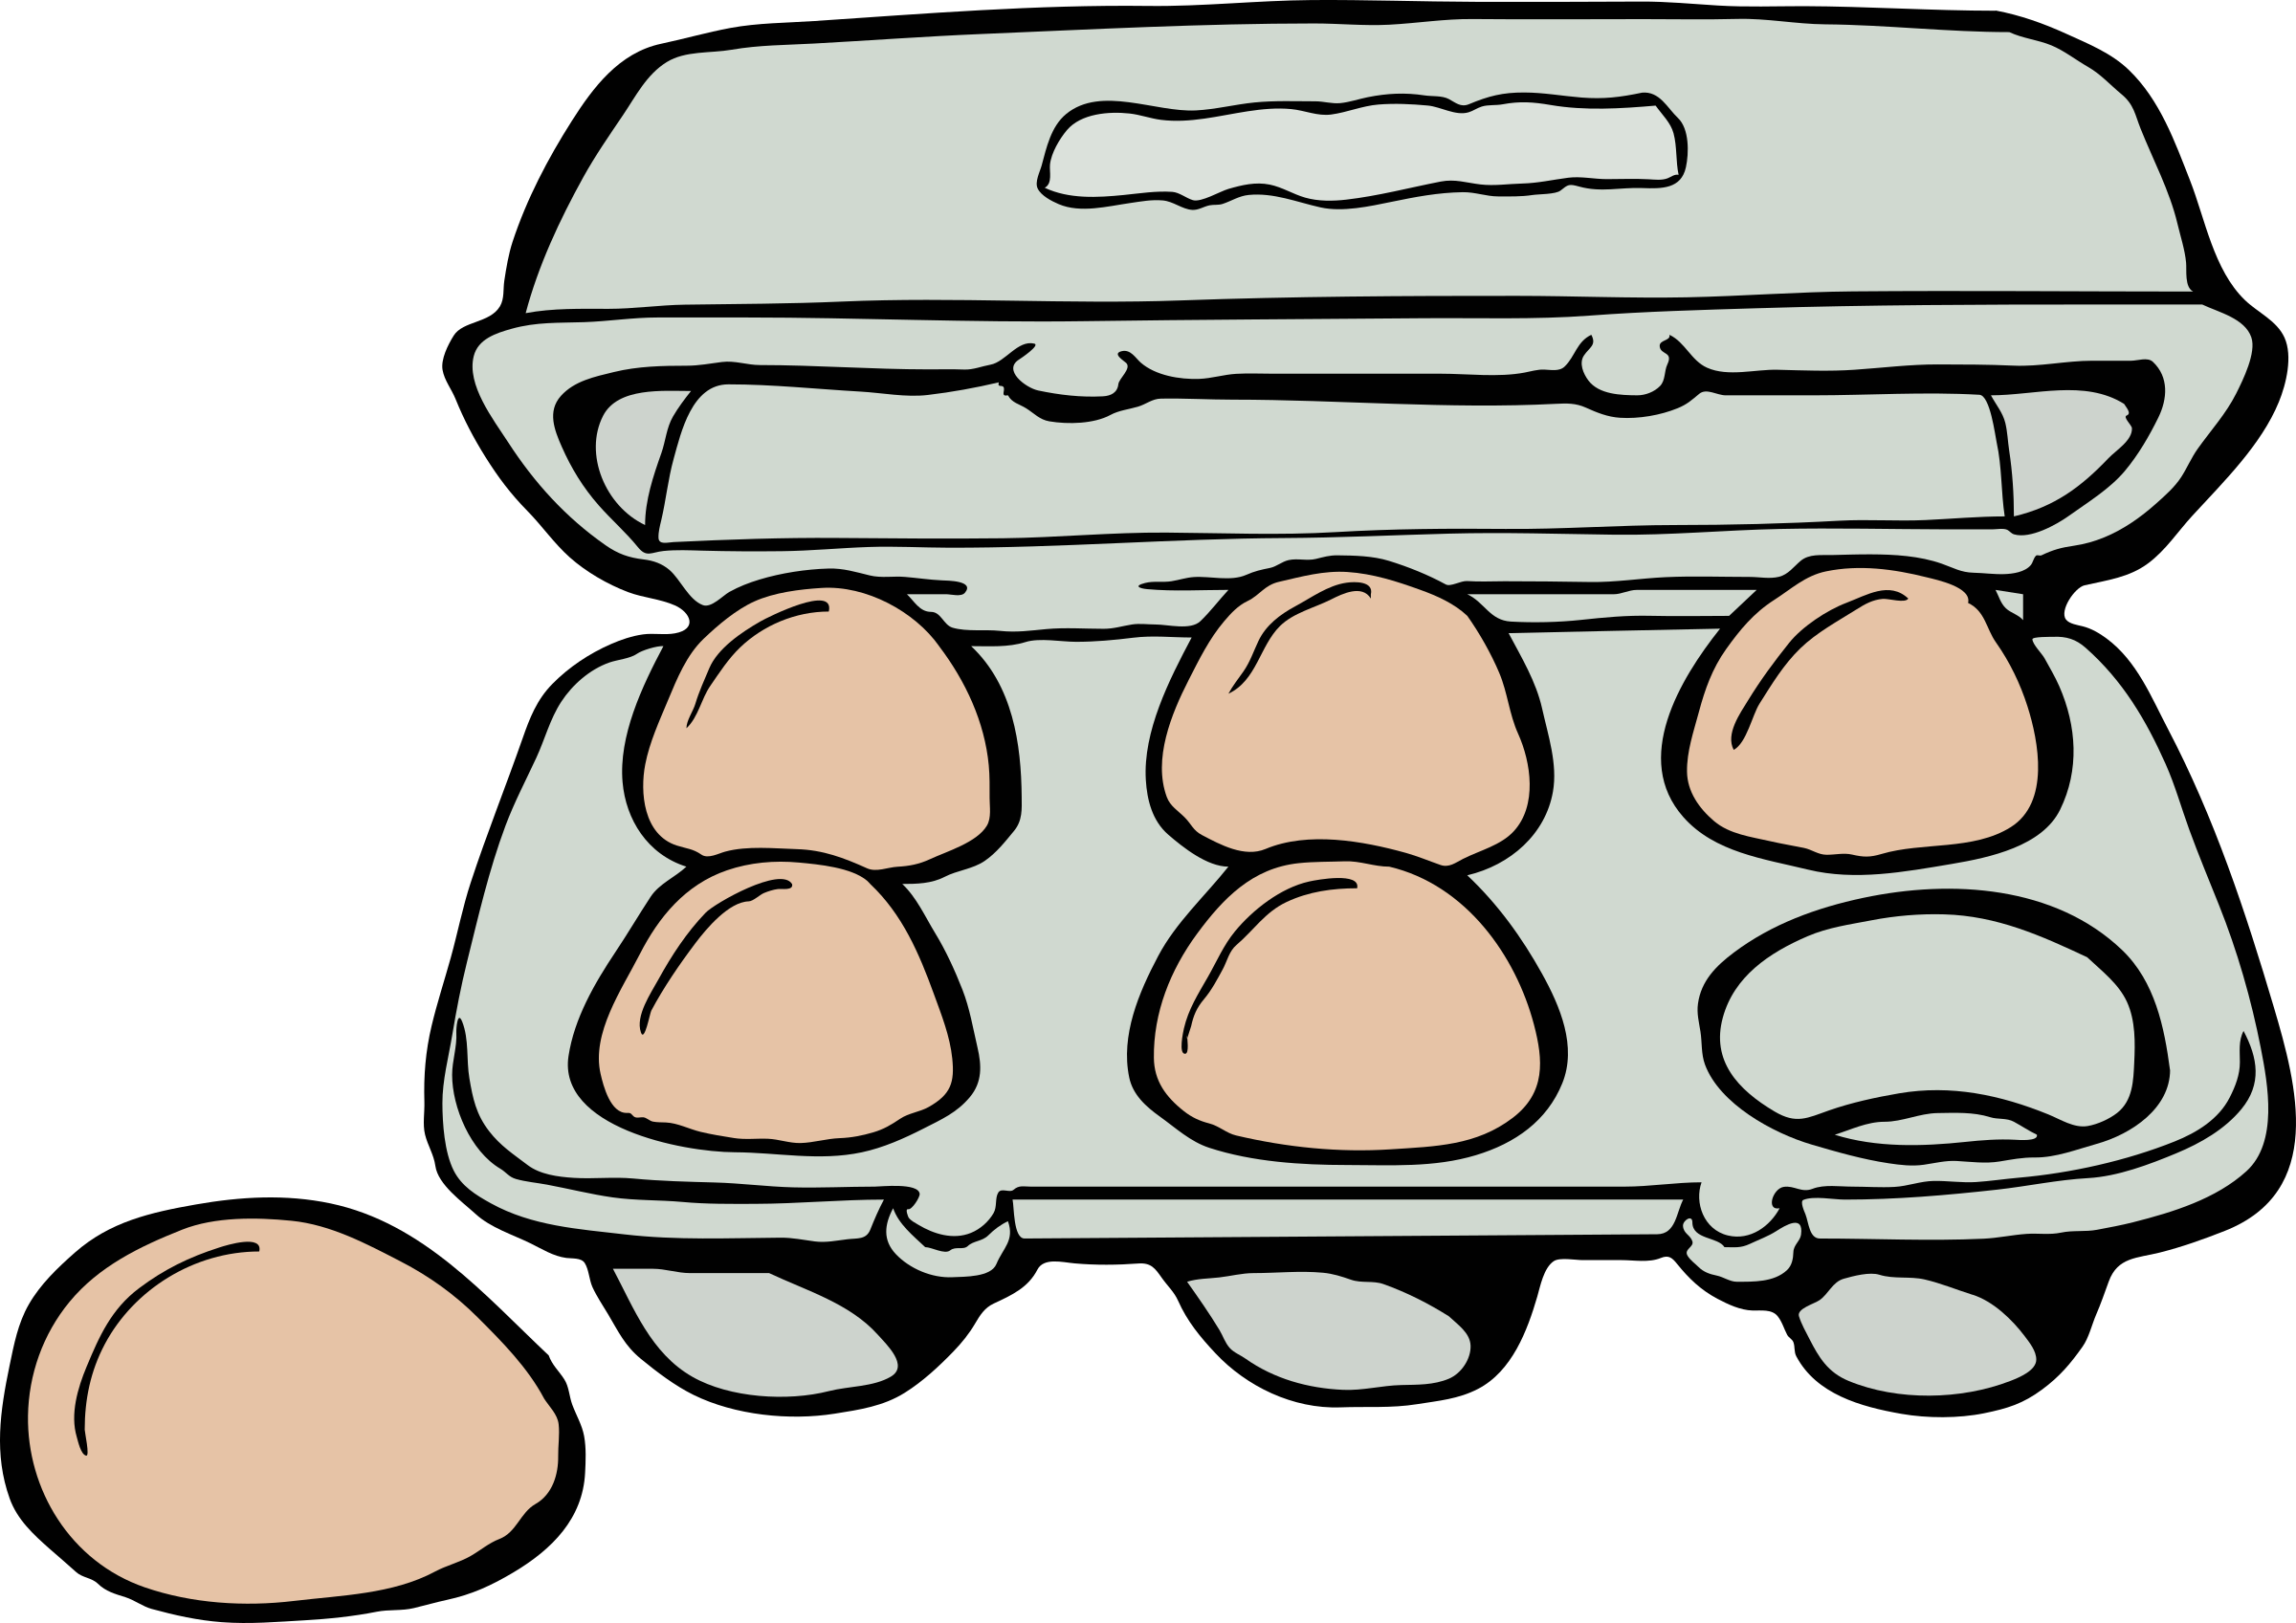 egg clipart six